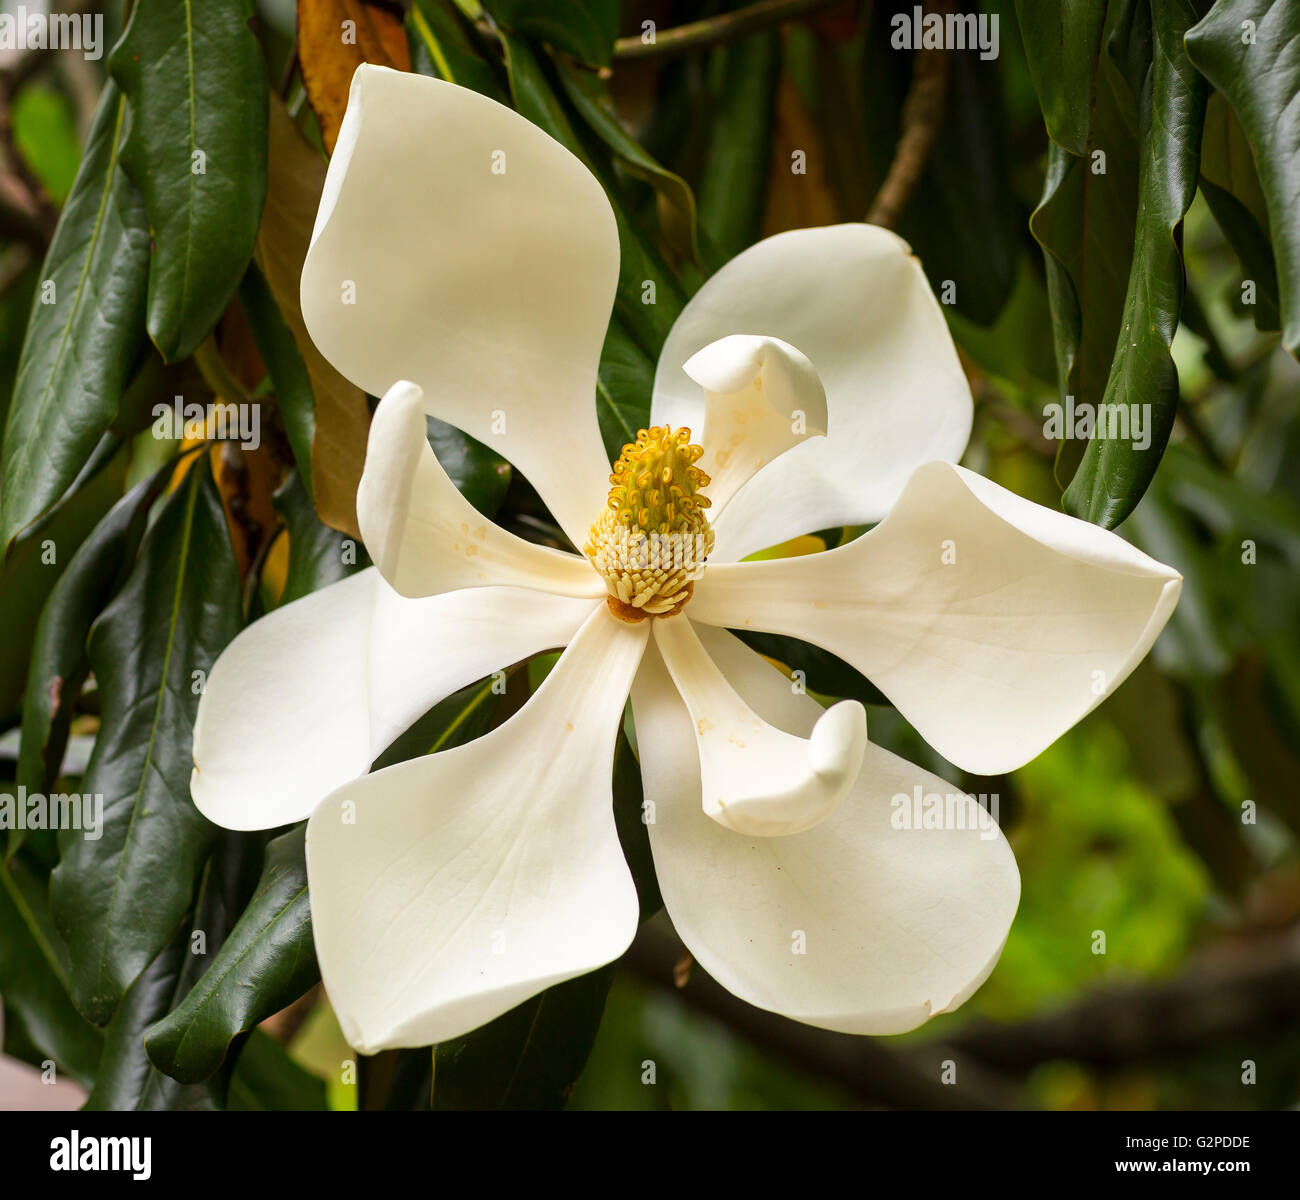 VIRGINIA, STATI UNITI D'AMERICA - Magnolia blossom, fiore su albero di magnolia in fiore. Foto Stock